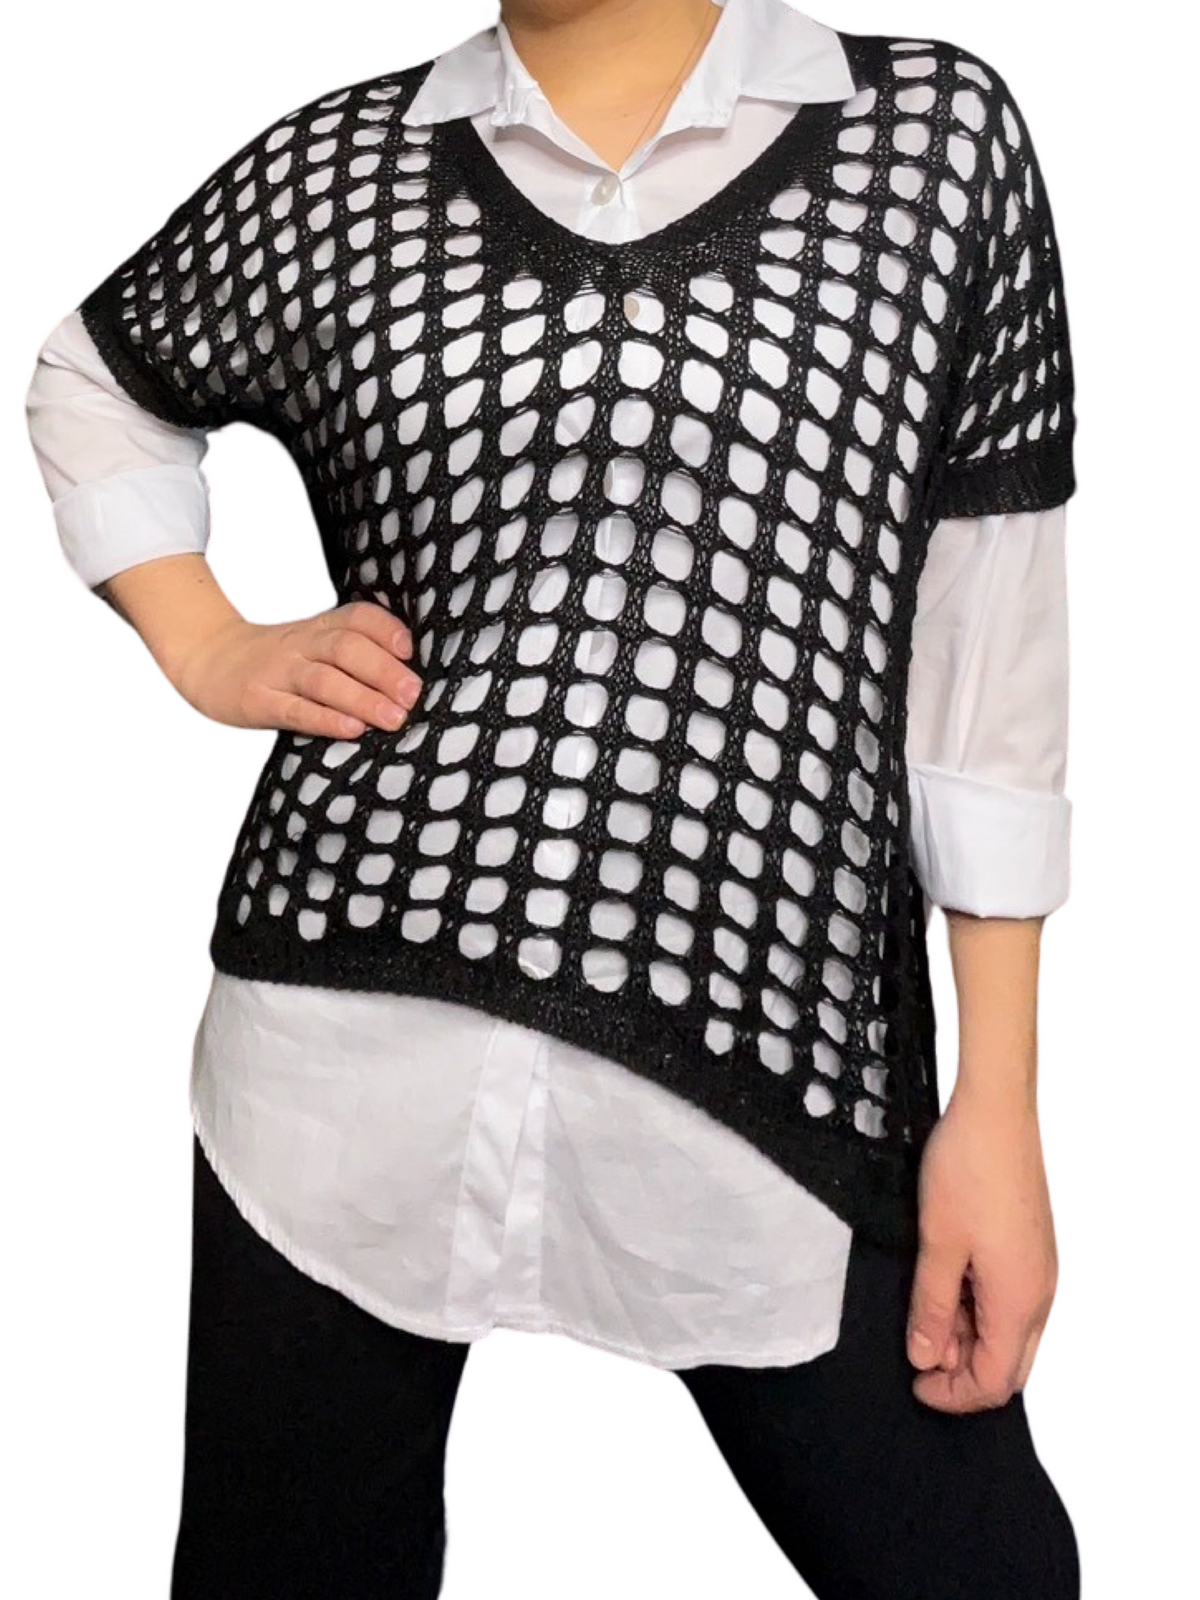 Chandail noir pour femme en tricot en grandes mailles   avec chemise à l'intérieur.